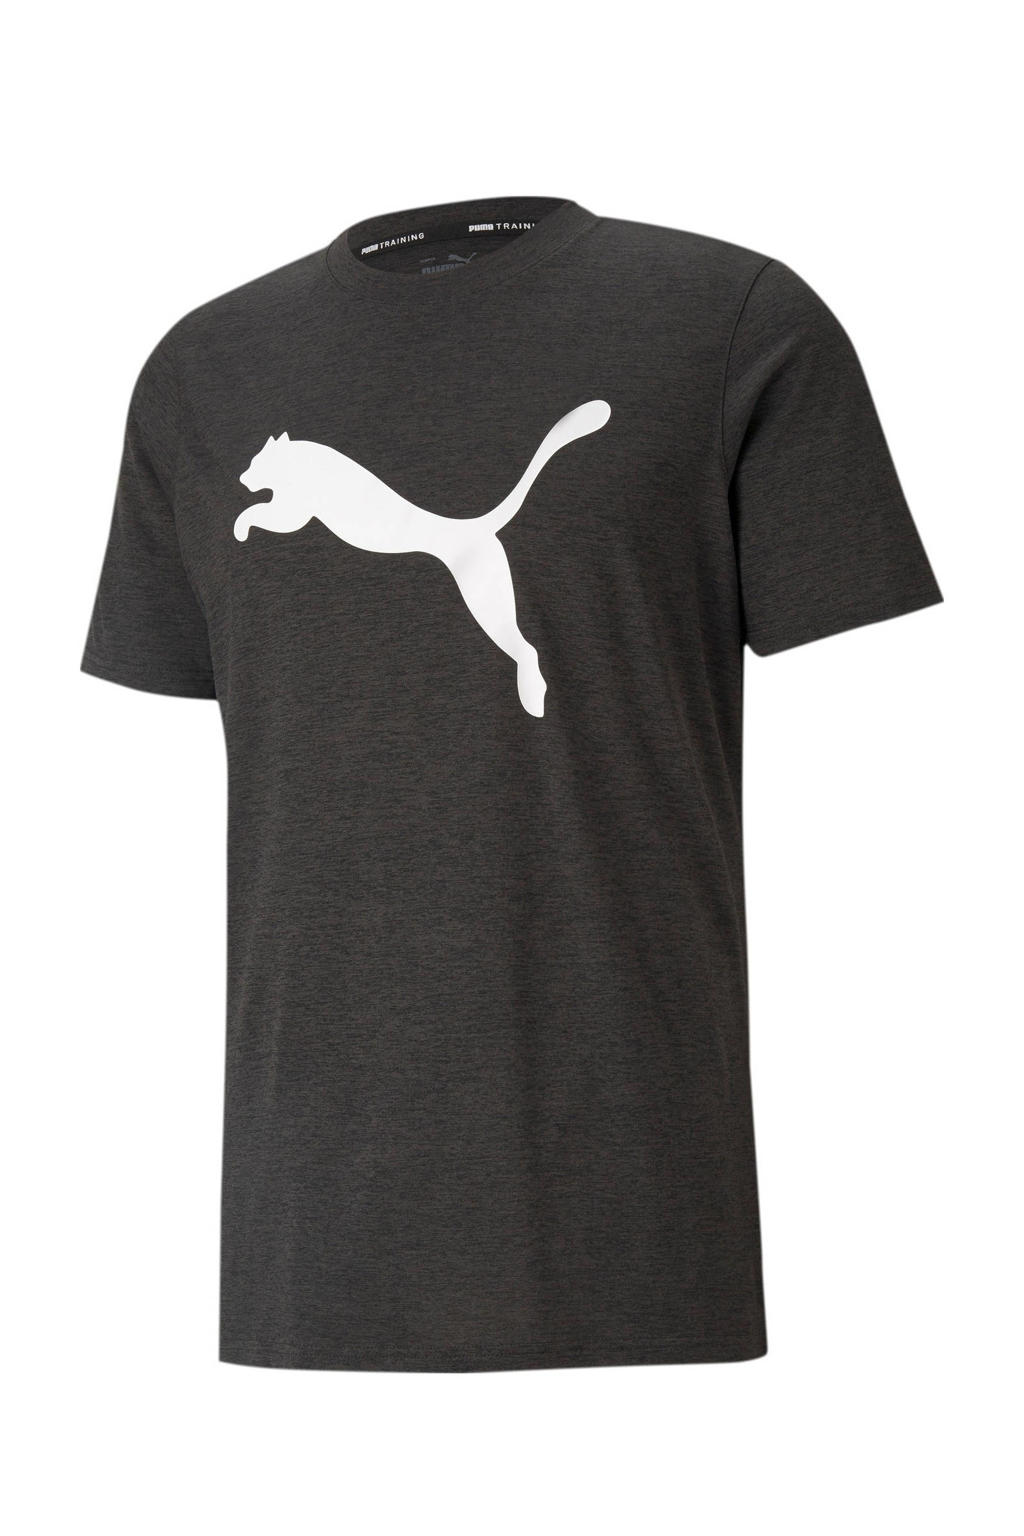 Puma   sport T-shirt donkergrijs